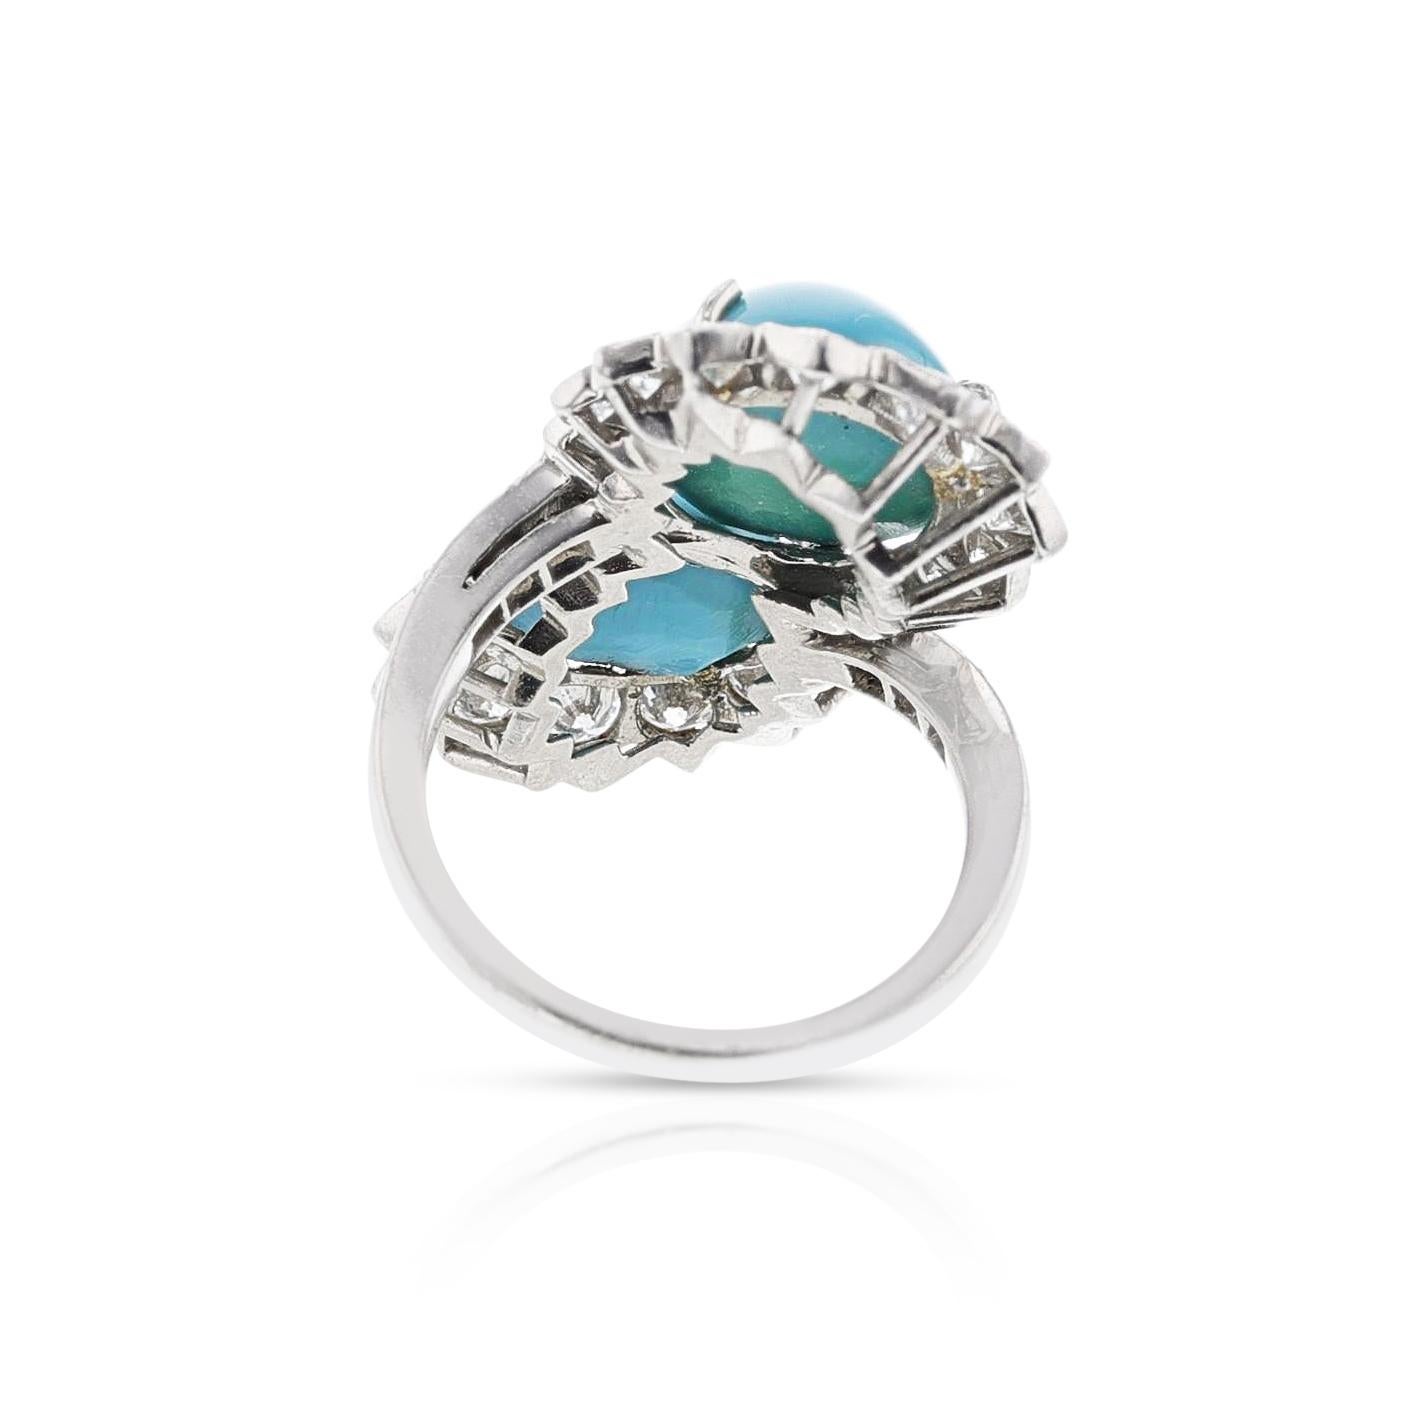 Van Cleef & Arpels Toi et Moi Turquoise and Diamond Ring, Platinum 2